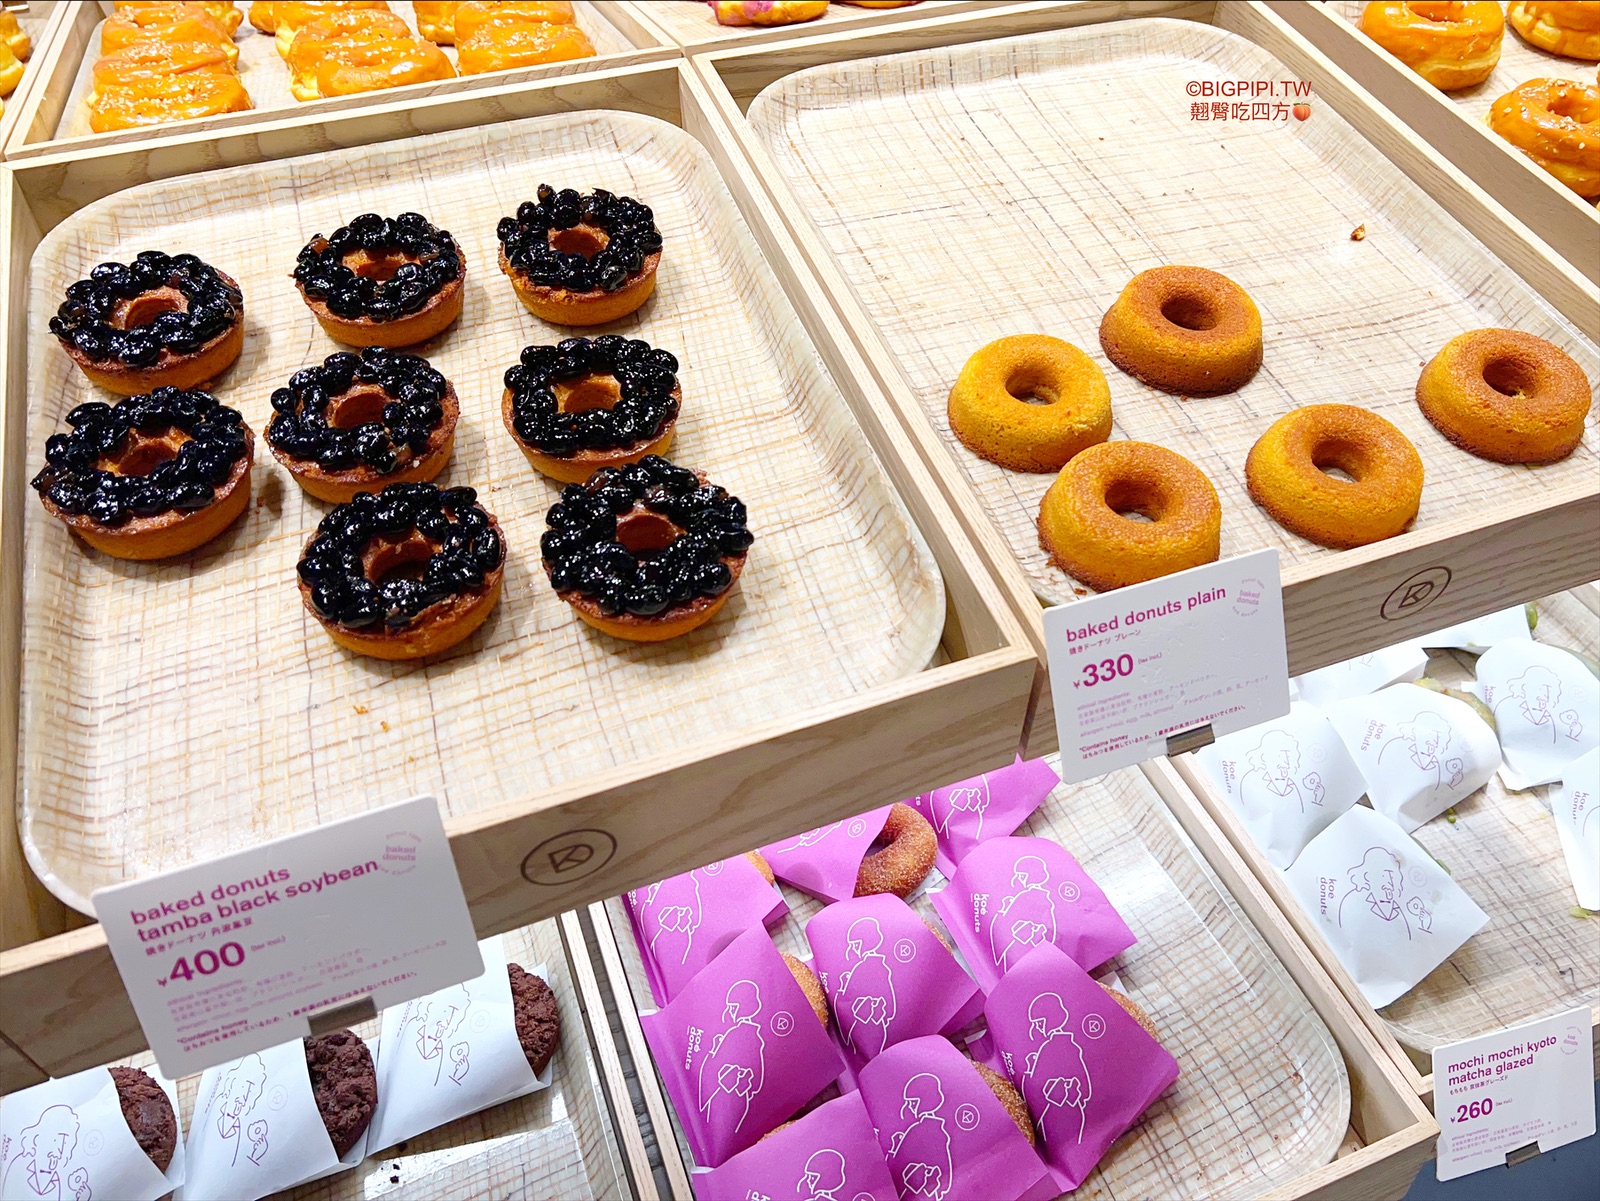 【京都美食】koé donuts 甜甜圈咖啡廳，環境絕美甜甜圈也好吃（價錢） @翹臀吃四方